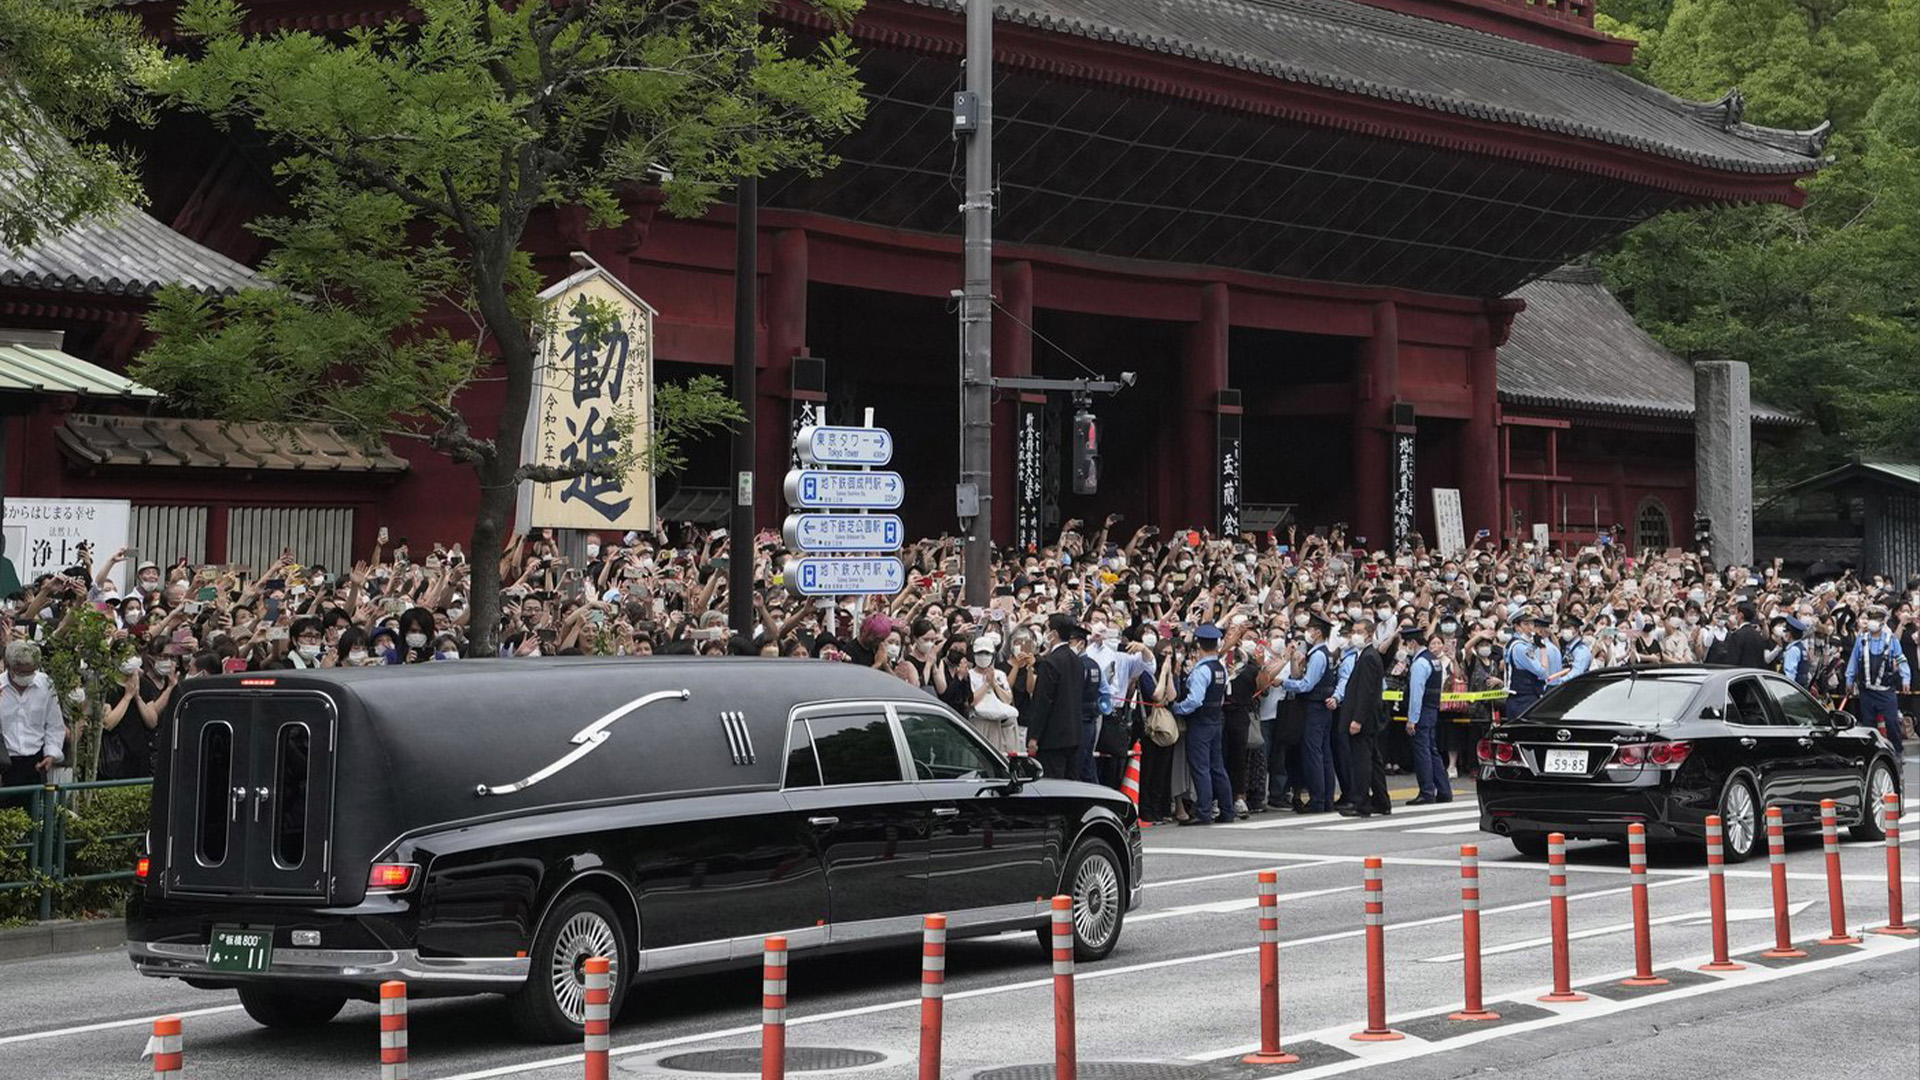 Le véhicule, à gauche, transportant le corps de l'ancien Premier ministre japonais Shinzo Abe quitte le temple Zojoji après ses funérailles à Tokyo le mardi 12 juillet 2022. Abe a été assassiné vendredi alors qu'il faisait campagne à Nara, dans l'ouest du Japon.